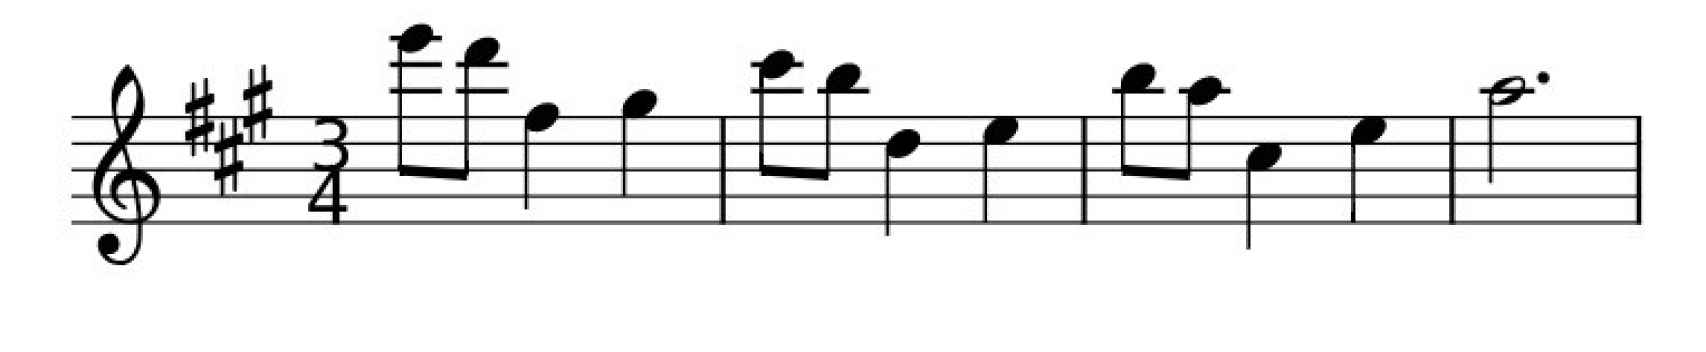 Notas del 'Nokia Tune', fragmento que pertenece al 'Gran Vals' de Francisco Tárrega. EE